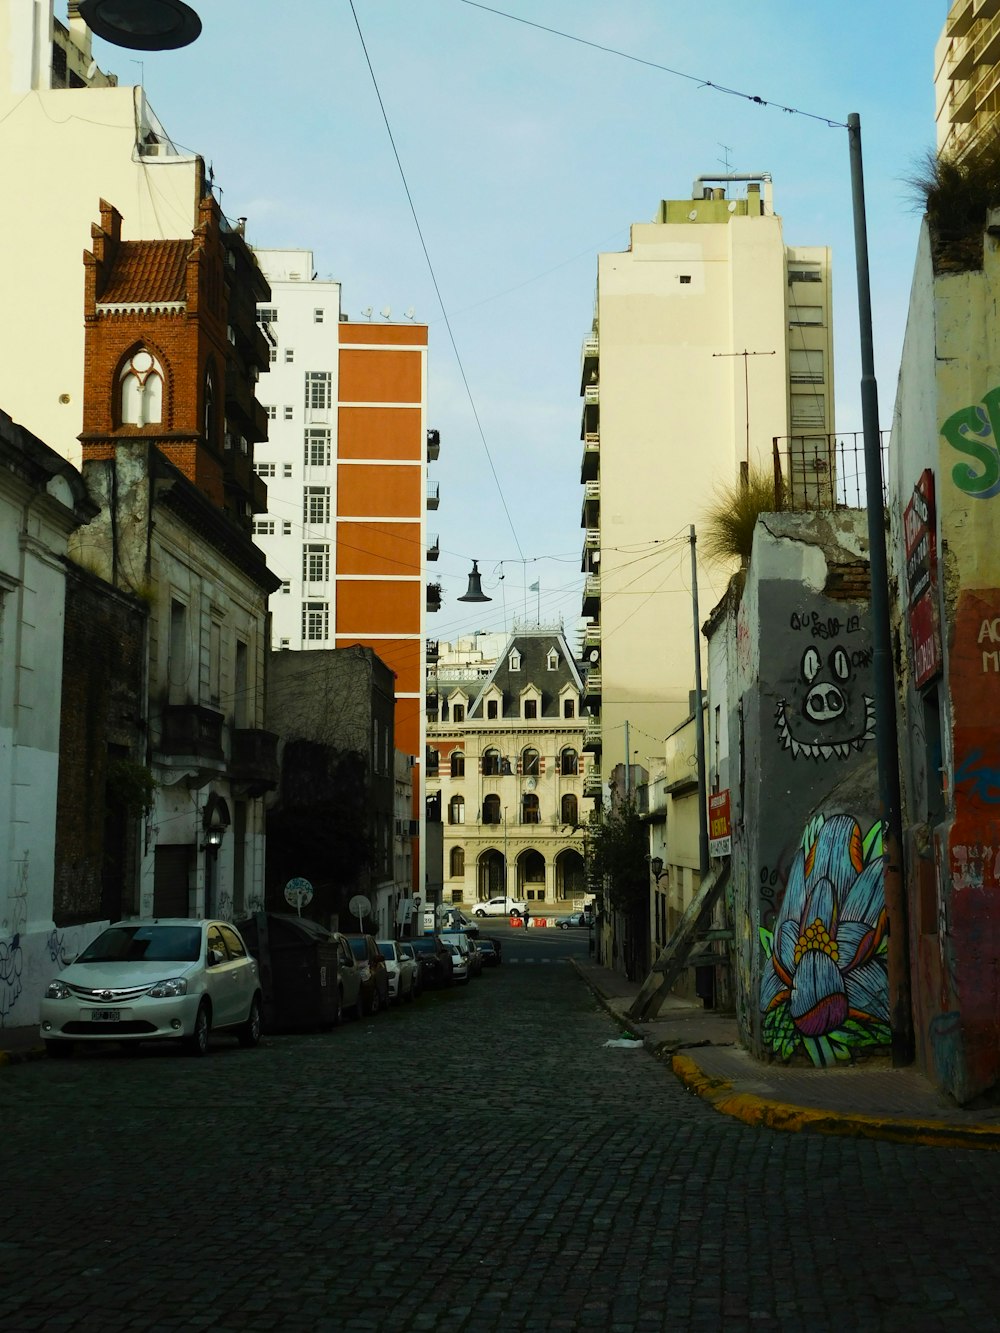 Une rue de la ville avec un tas de graffitis sur les bâtiments